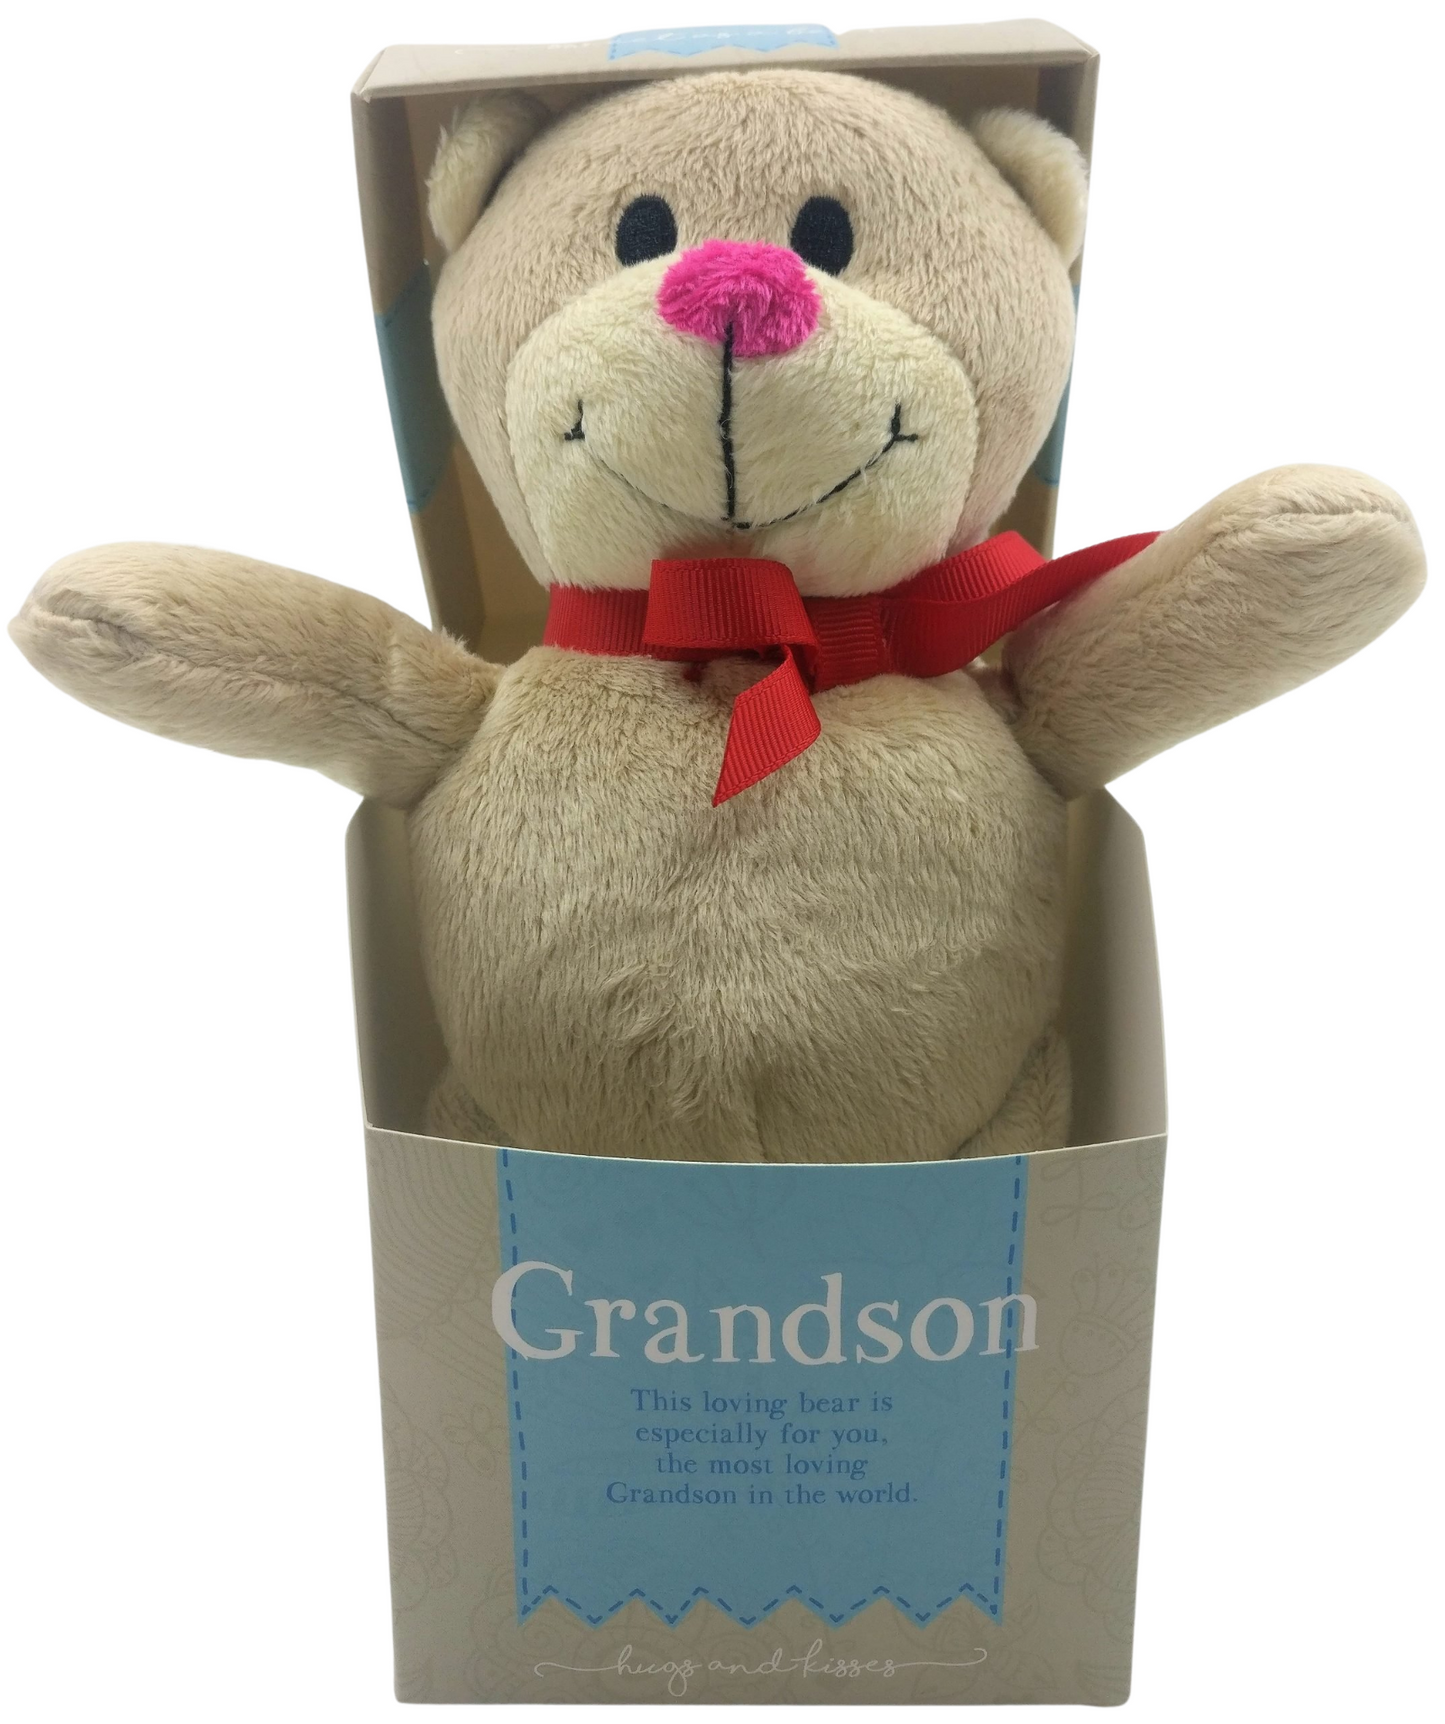 Grandson Bear in a Box